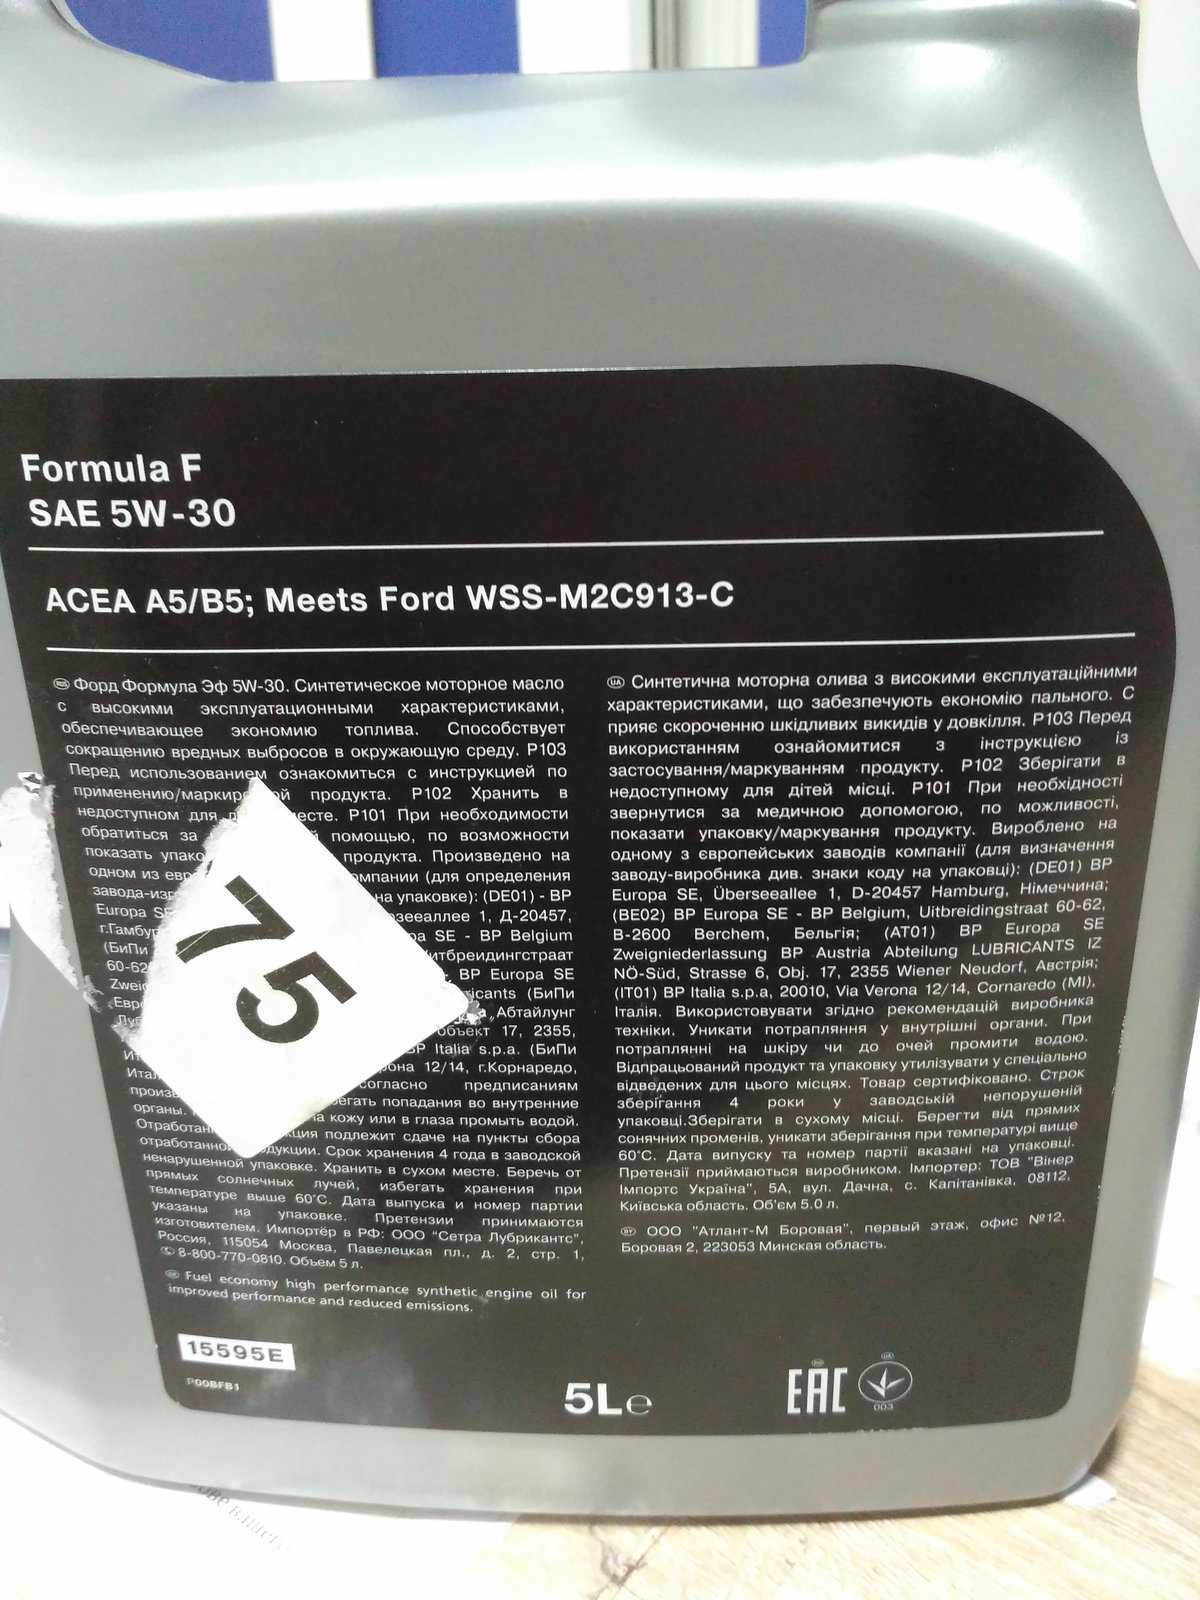 Масло формула отзывы. Форд формула 5w30 для дизеля допуски. Форд формула 5w30 новая канистра. Масло формула 5f30. Проверка подлинности масла Форд формула ф 5w30.